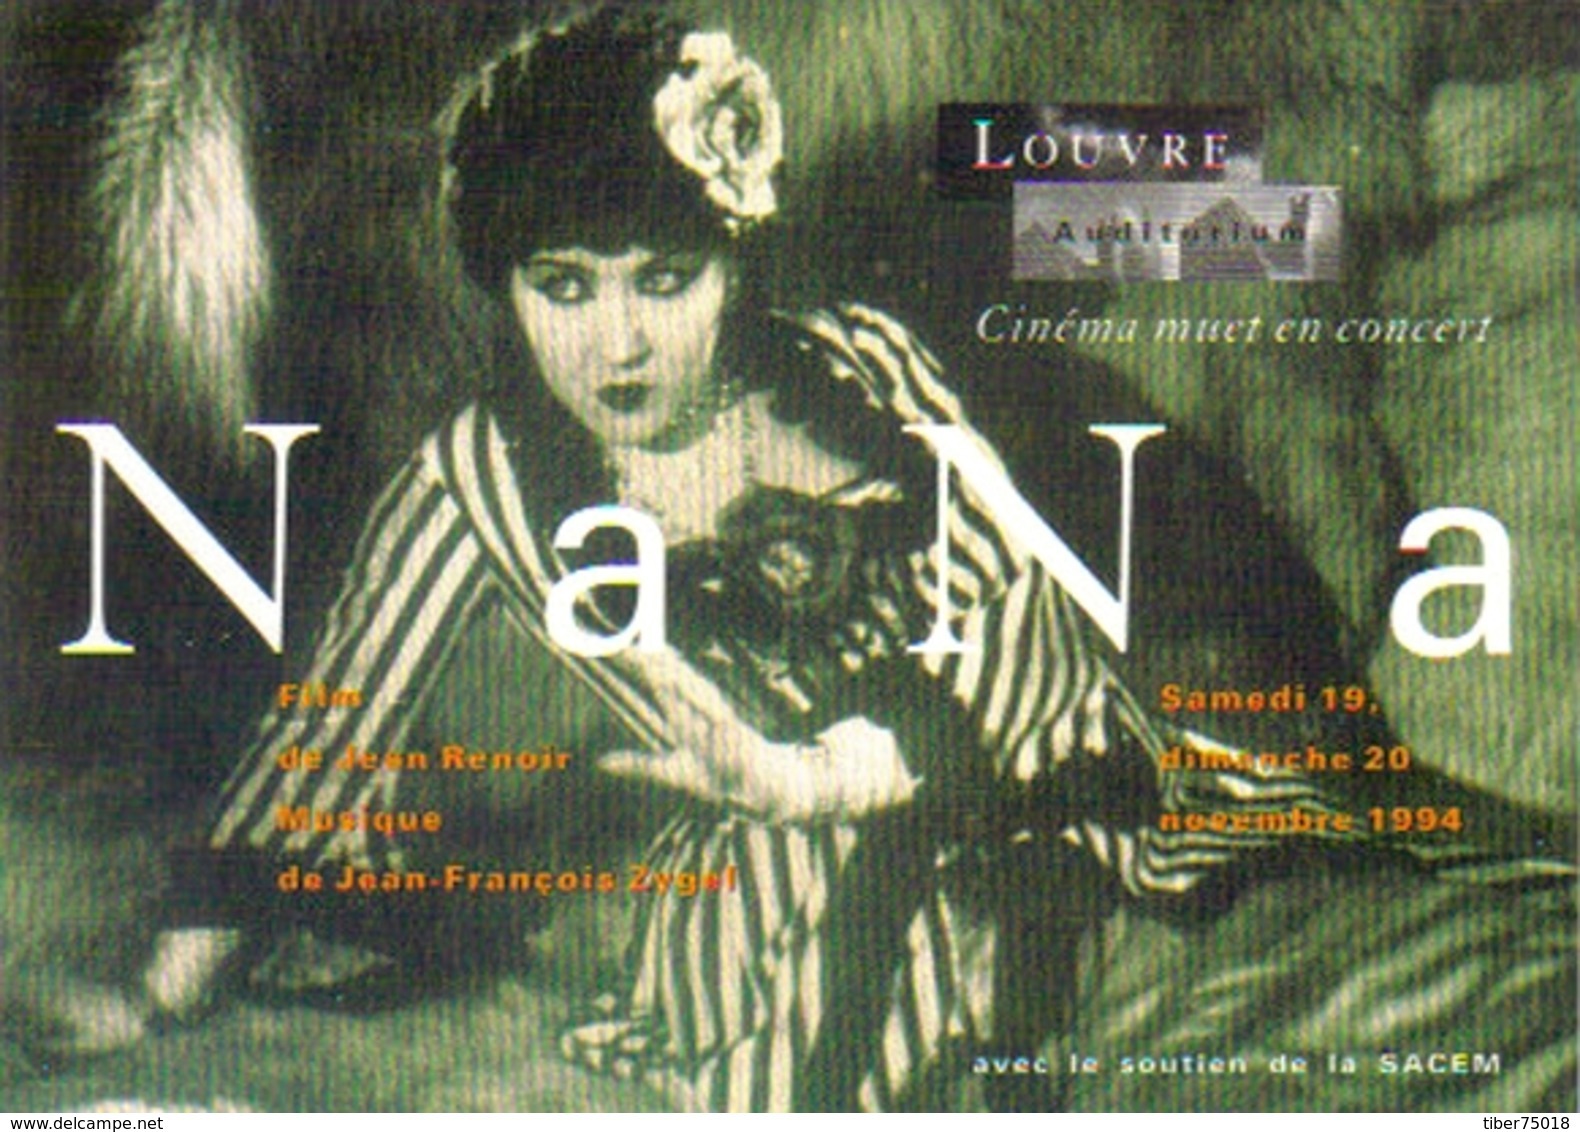 Carte Postale "Cart'Com" - Série Spectacle, Cinéma, Film - Louvre Auditorium - Nana (Catherine Hessling) De Jean Renoir - Affiches Sur Carte